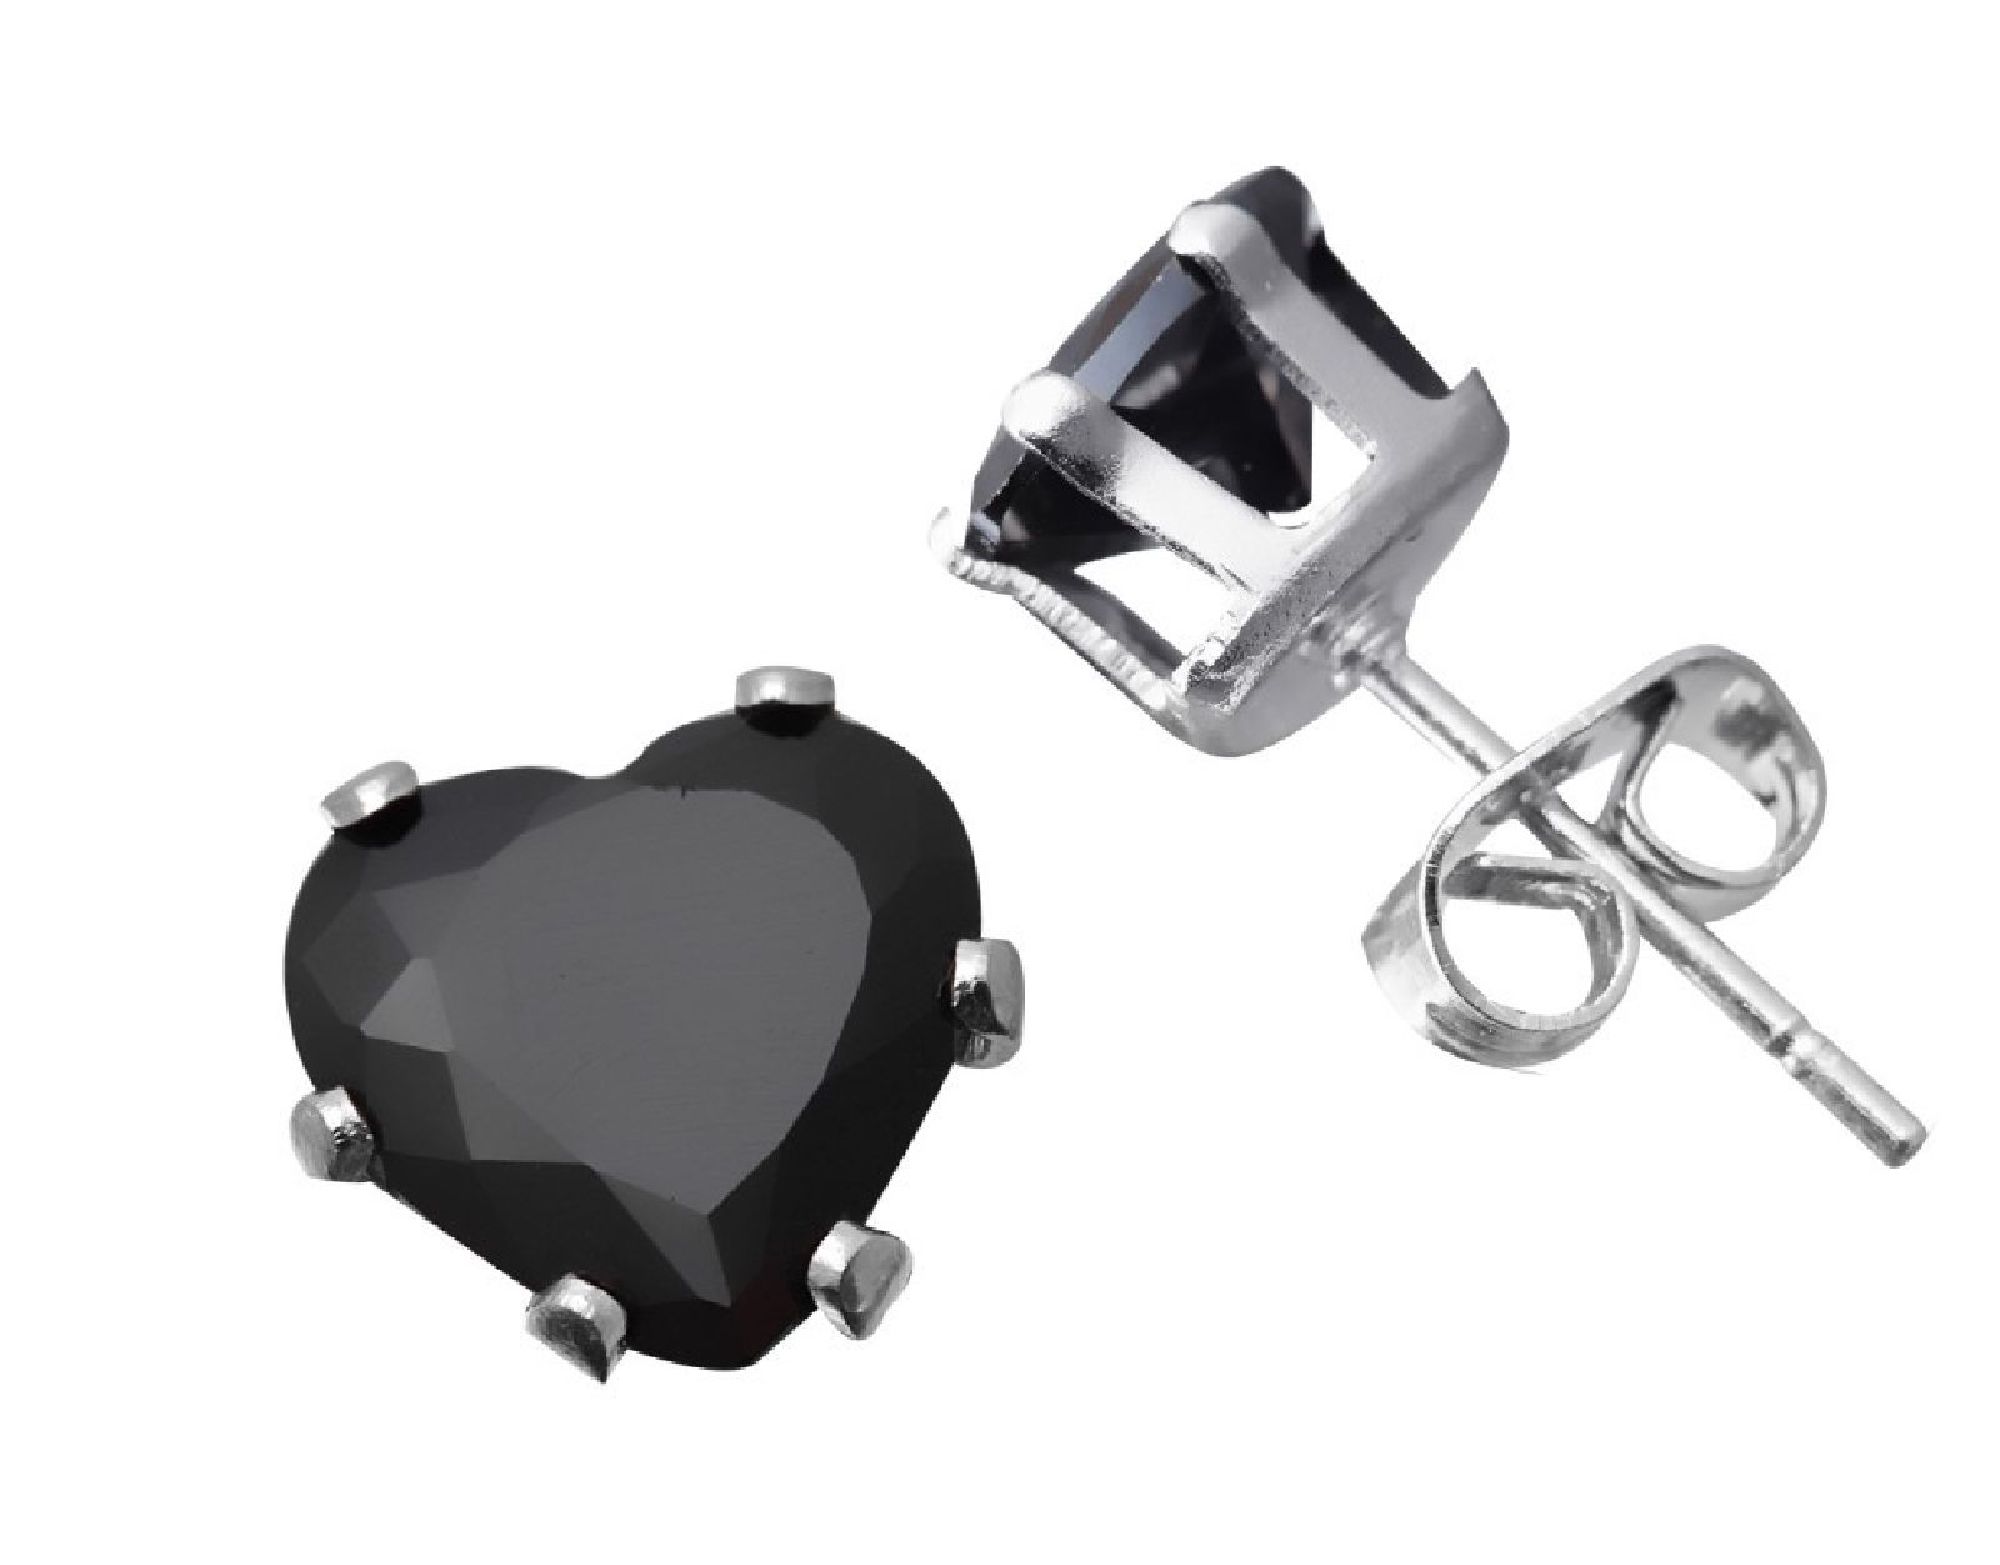 ParisJewelry.com 5 Carat Heart Shape Black Diamond manmade Stud Earrings for Men in Sterling Silver Designed in France